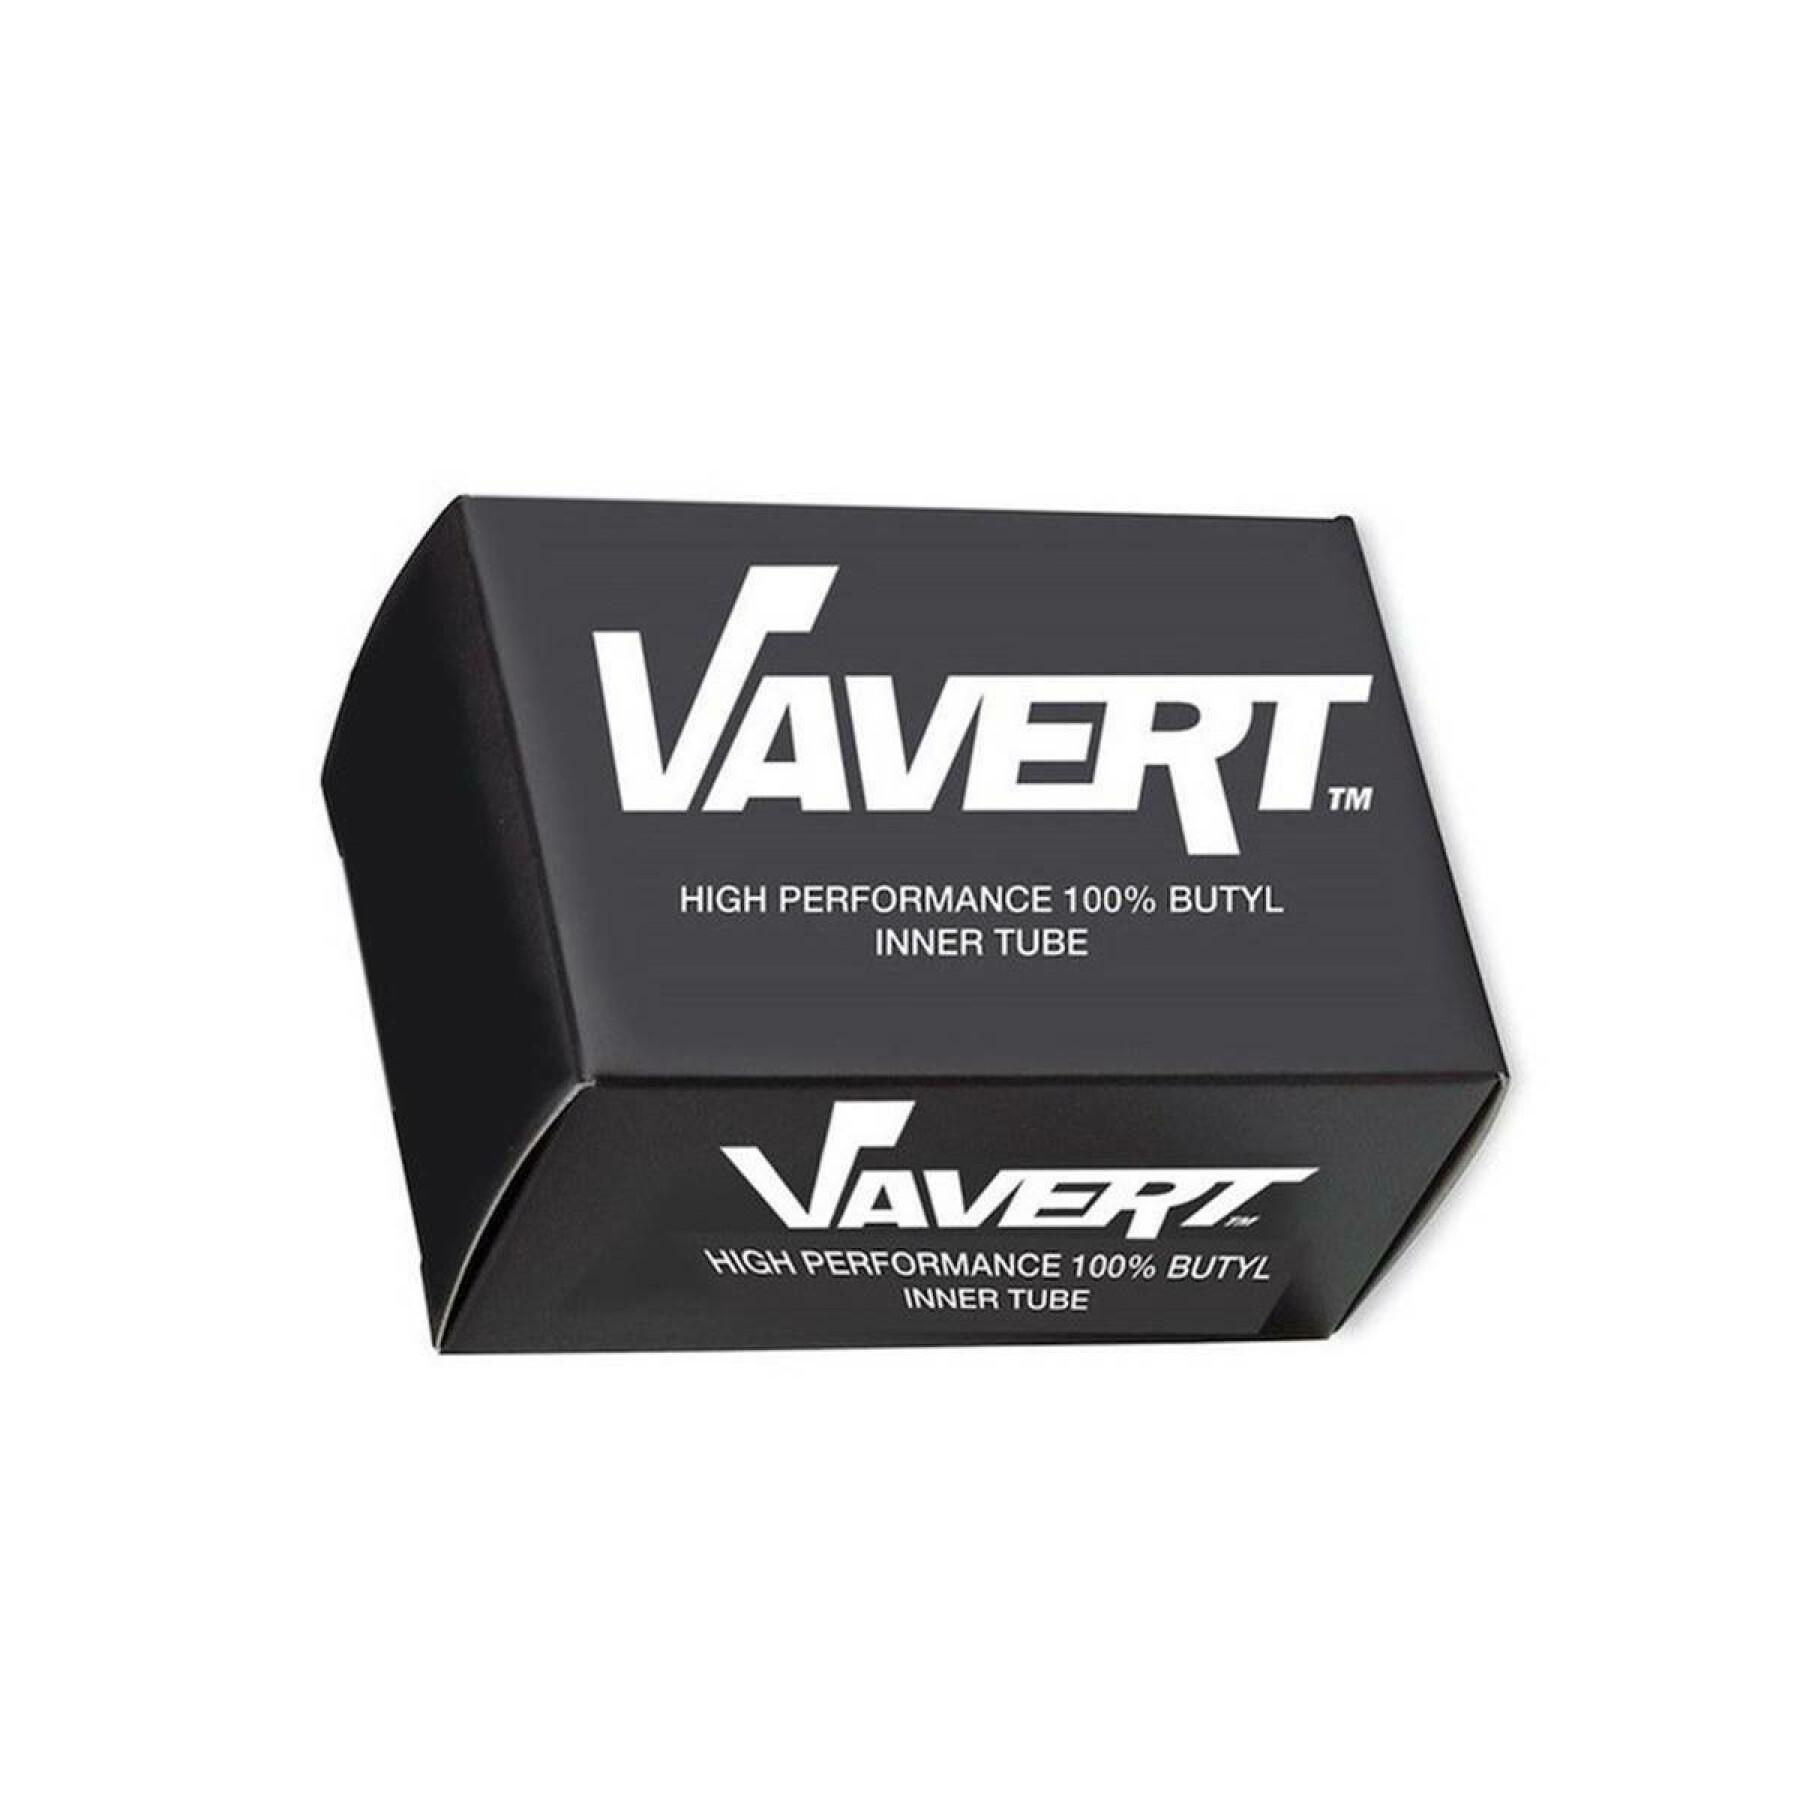 Innerslang med Presta-ventil Vavert 29 40mm